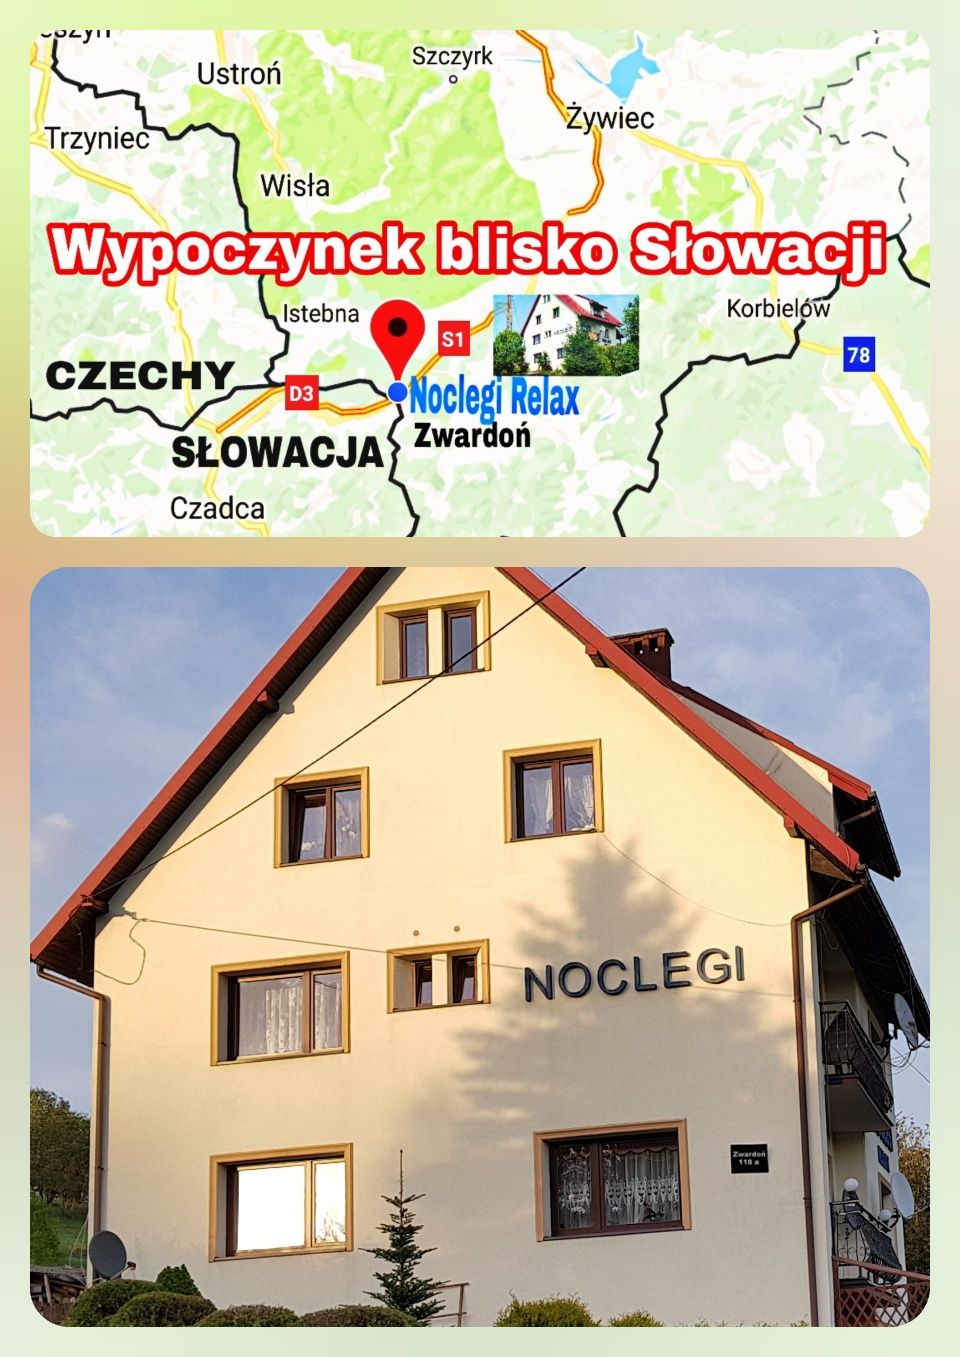 Wolne pokojj 20km od Wisły Zwardoń 500m Słowacja